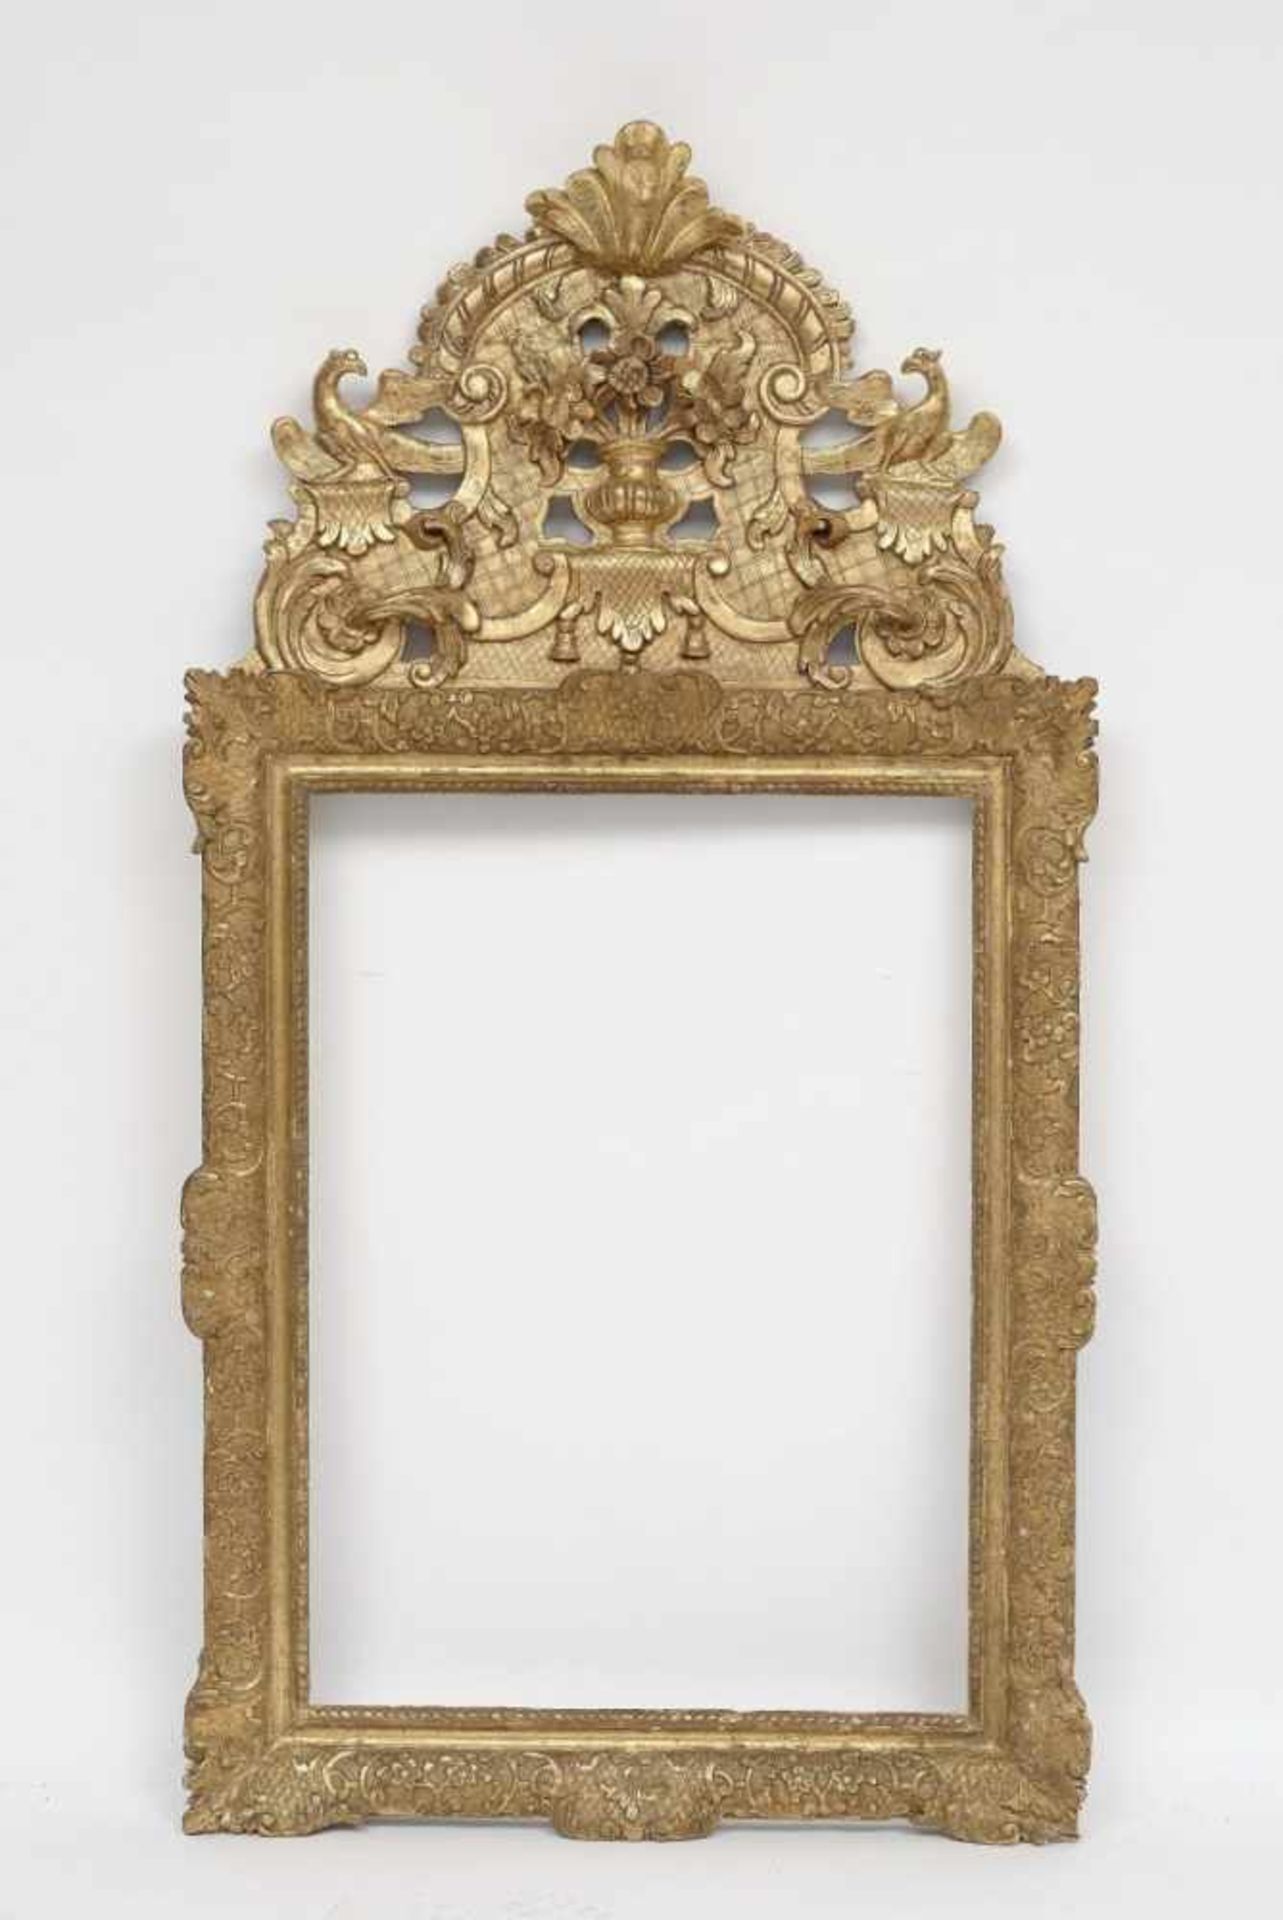 Rahmen mit Aufsatz Frankreich, 1. Hälfte 18. Jh. Holz, geschnitzt, gold gefasst. Dekor mit